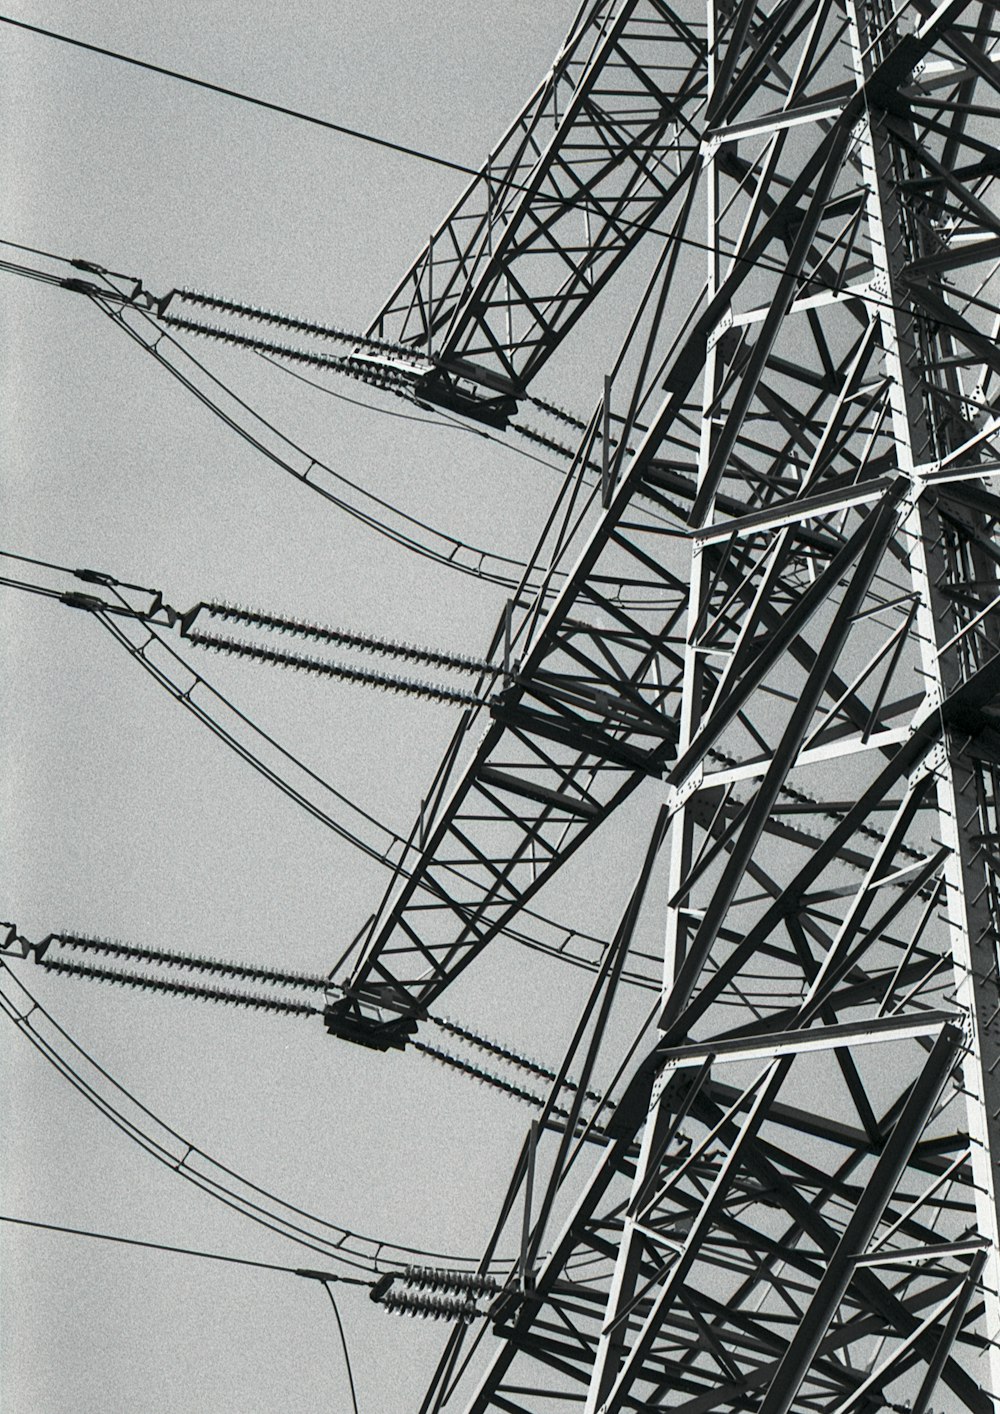 Una foto en blanco y negro de las líneas eléctricas